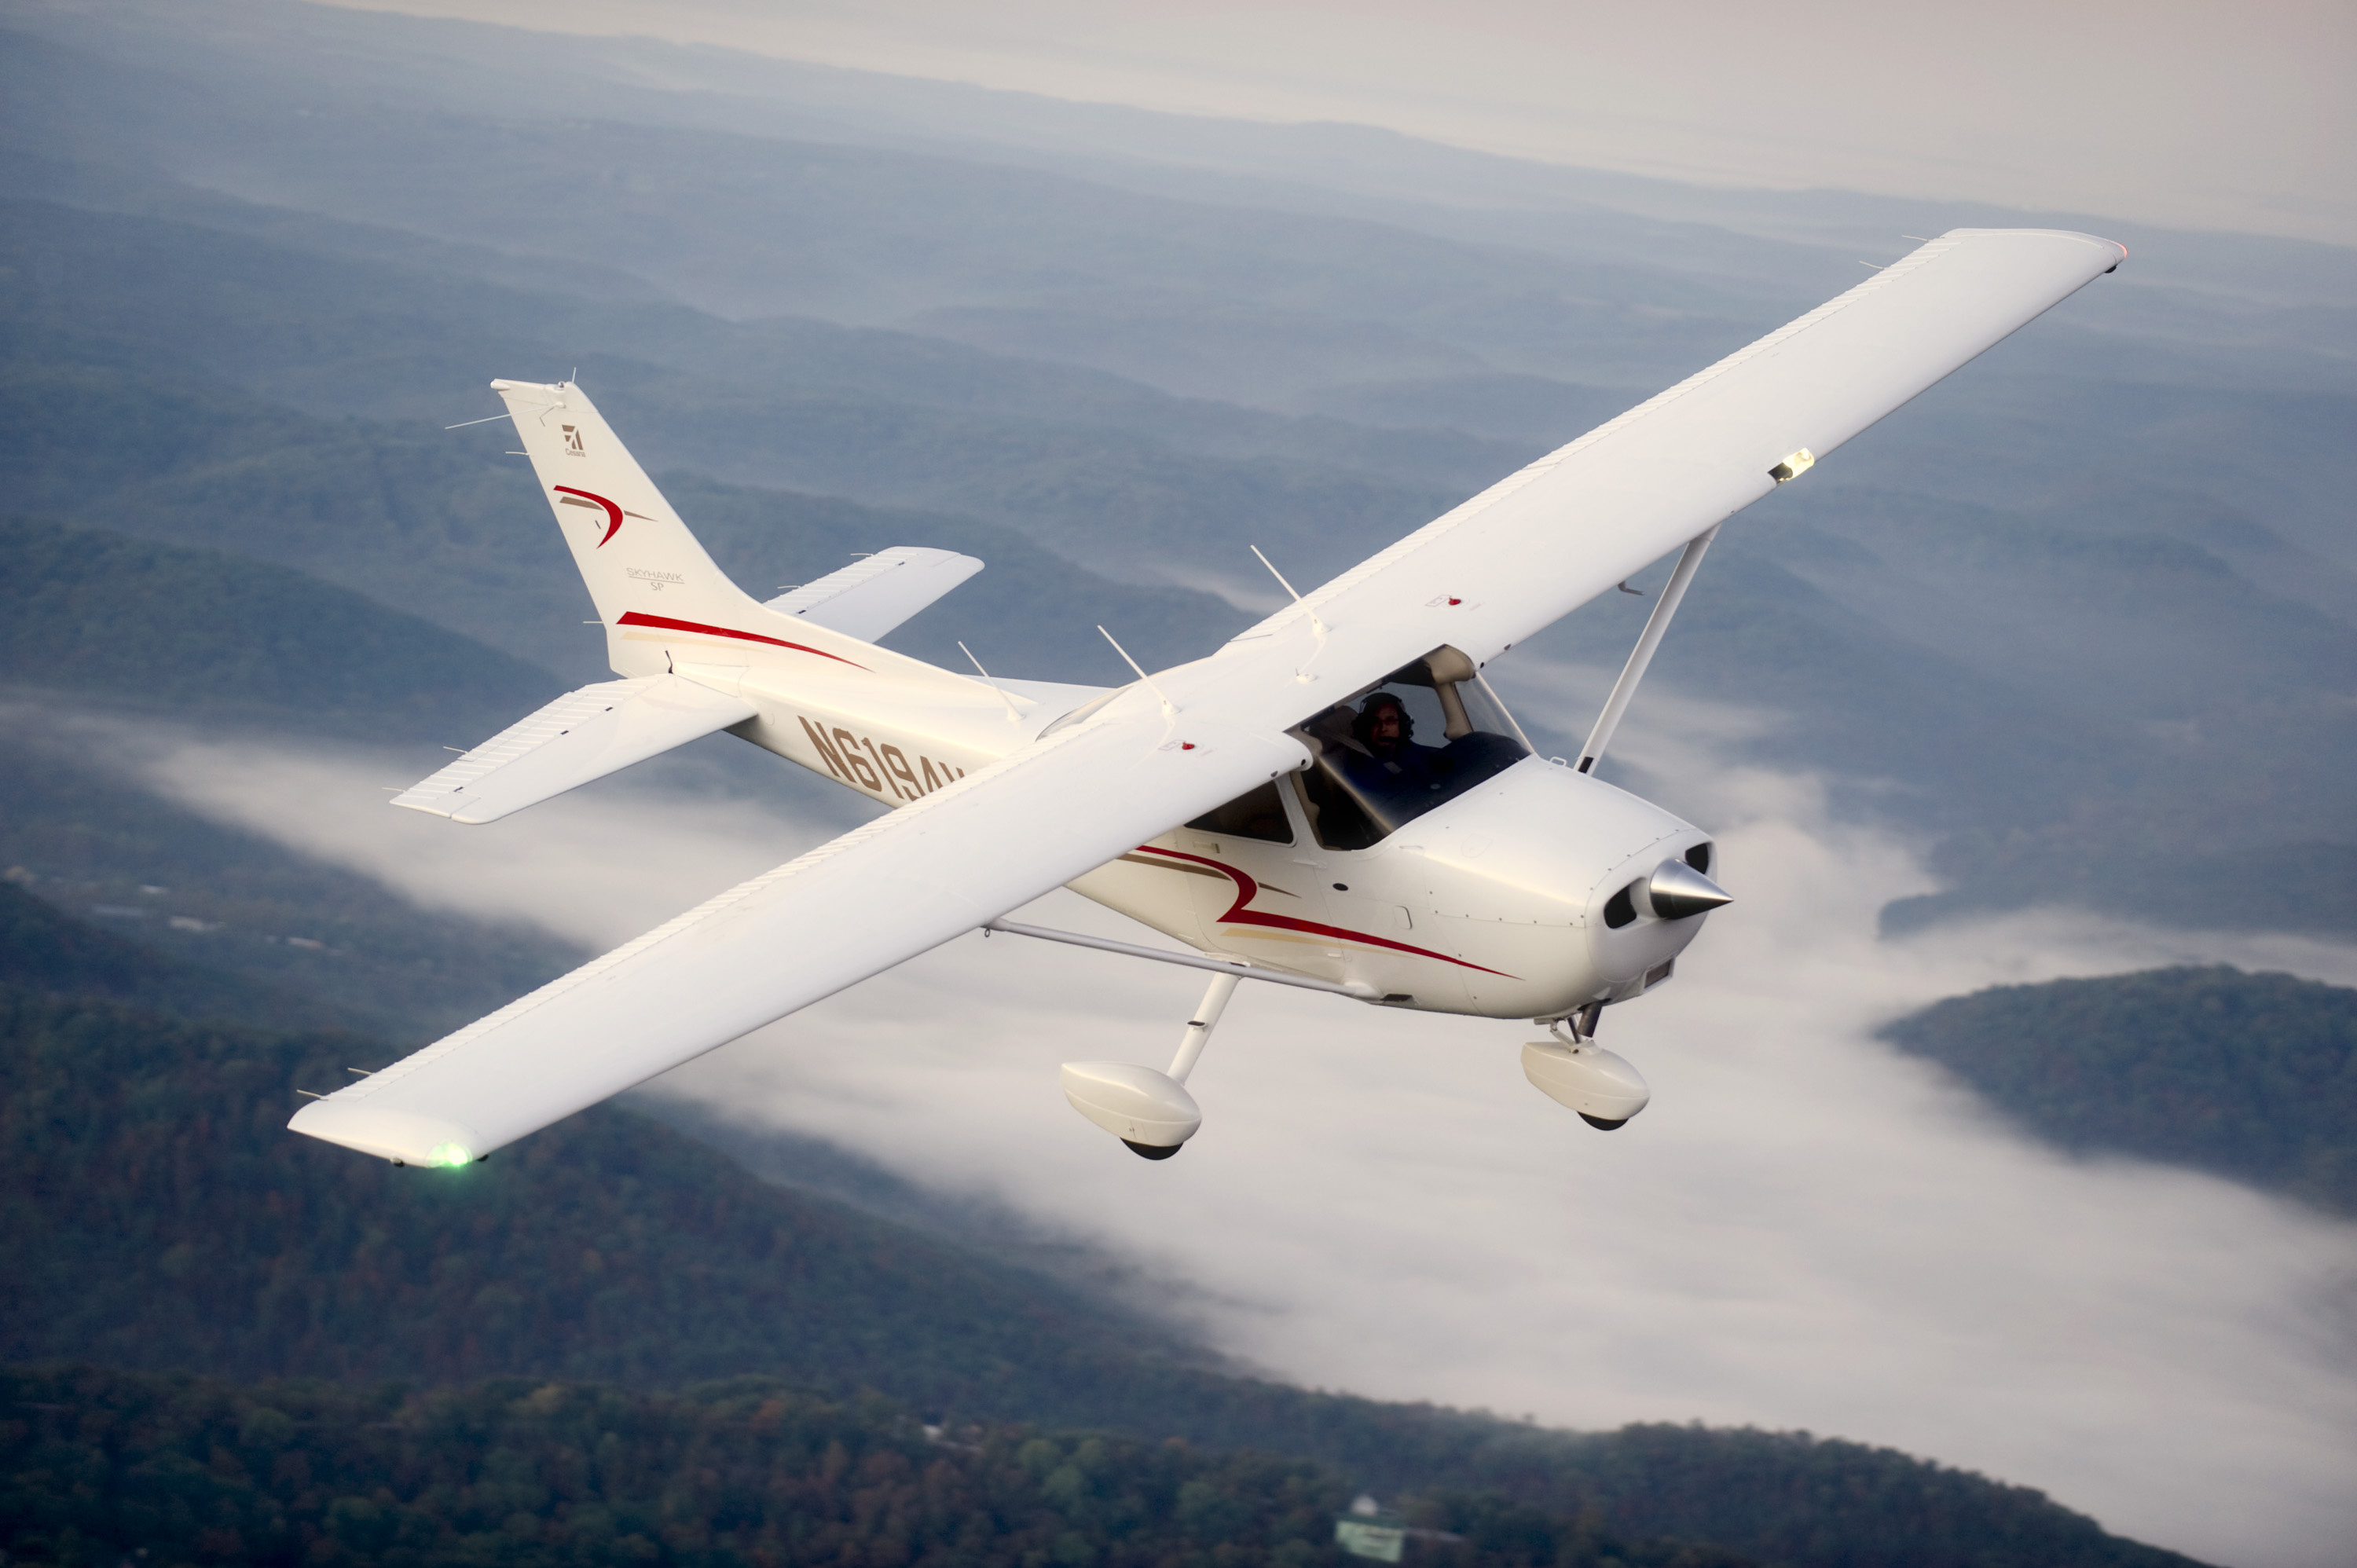 Reims-Cessna, Cessna 210, High-quality wallpaper, Aviation enthusiasts, 3000x2000 HD Desktop